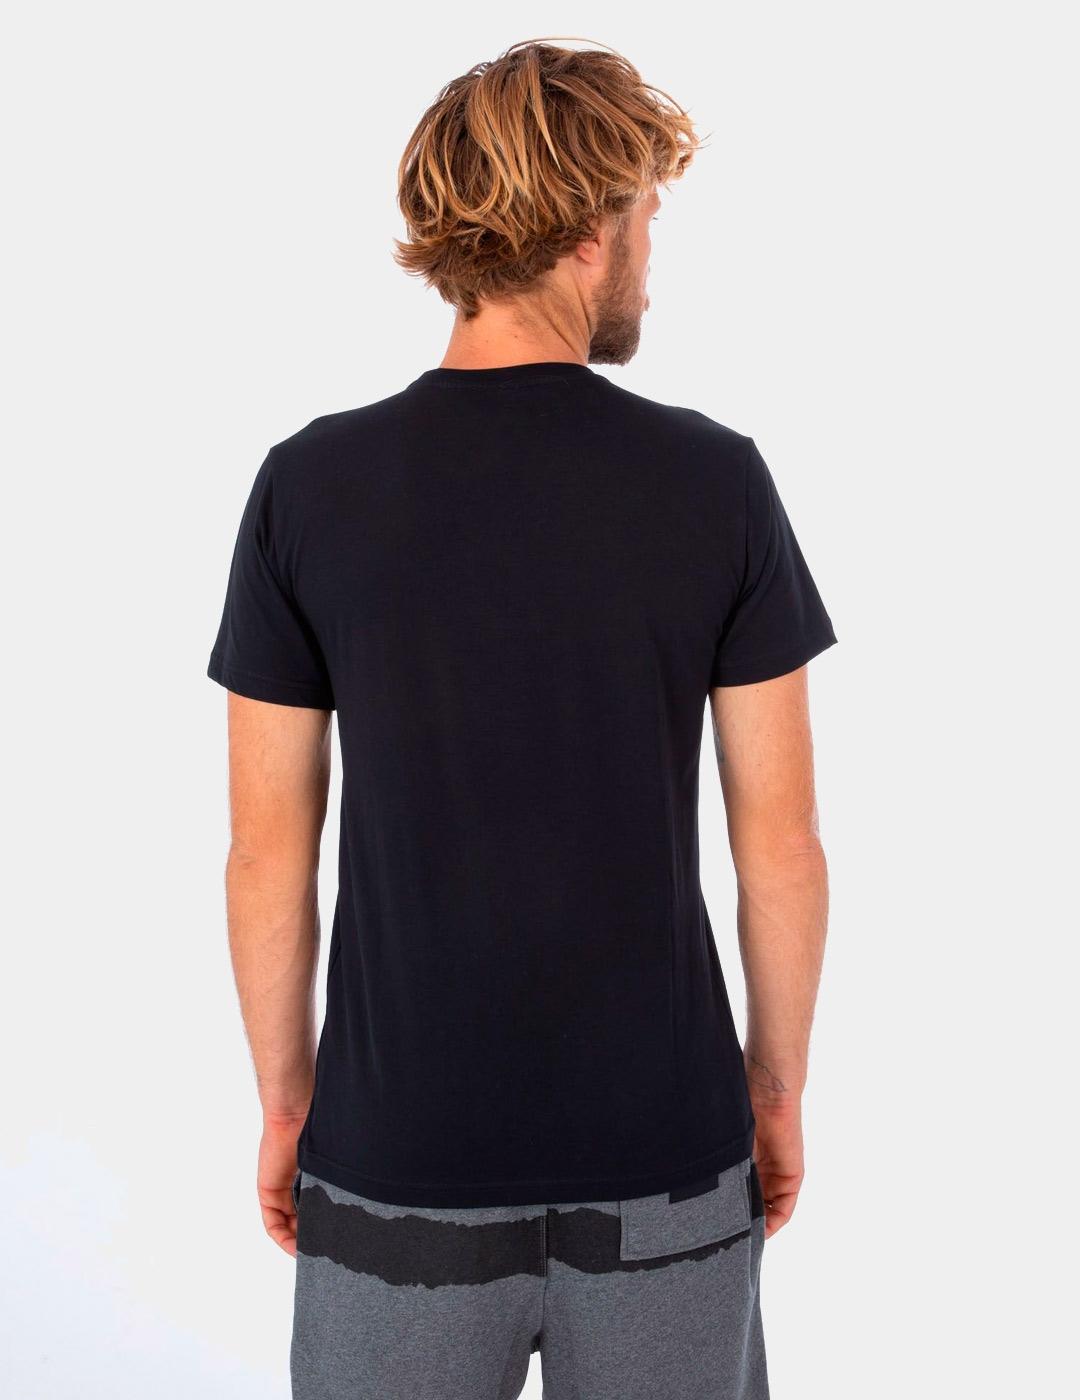 Camiseta OCEANCARE BLOCK PARTY - Light Carbon